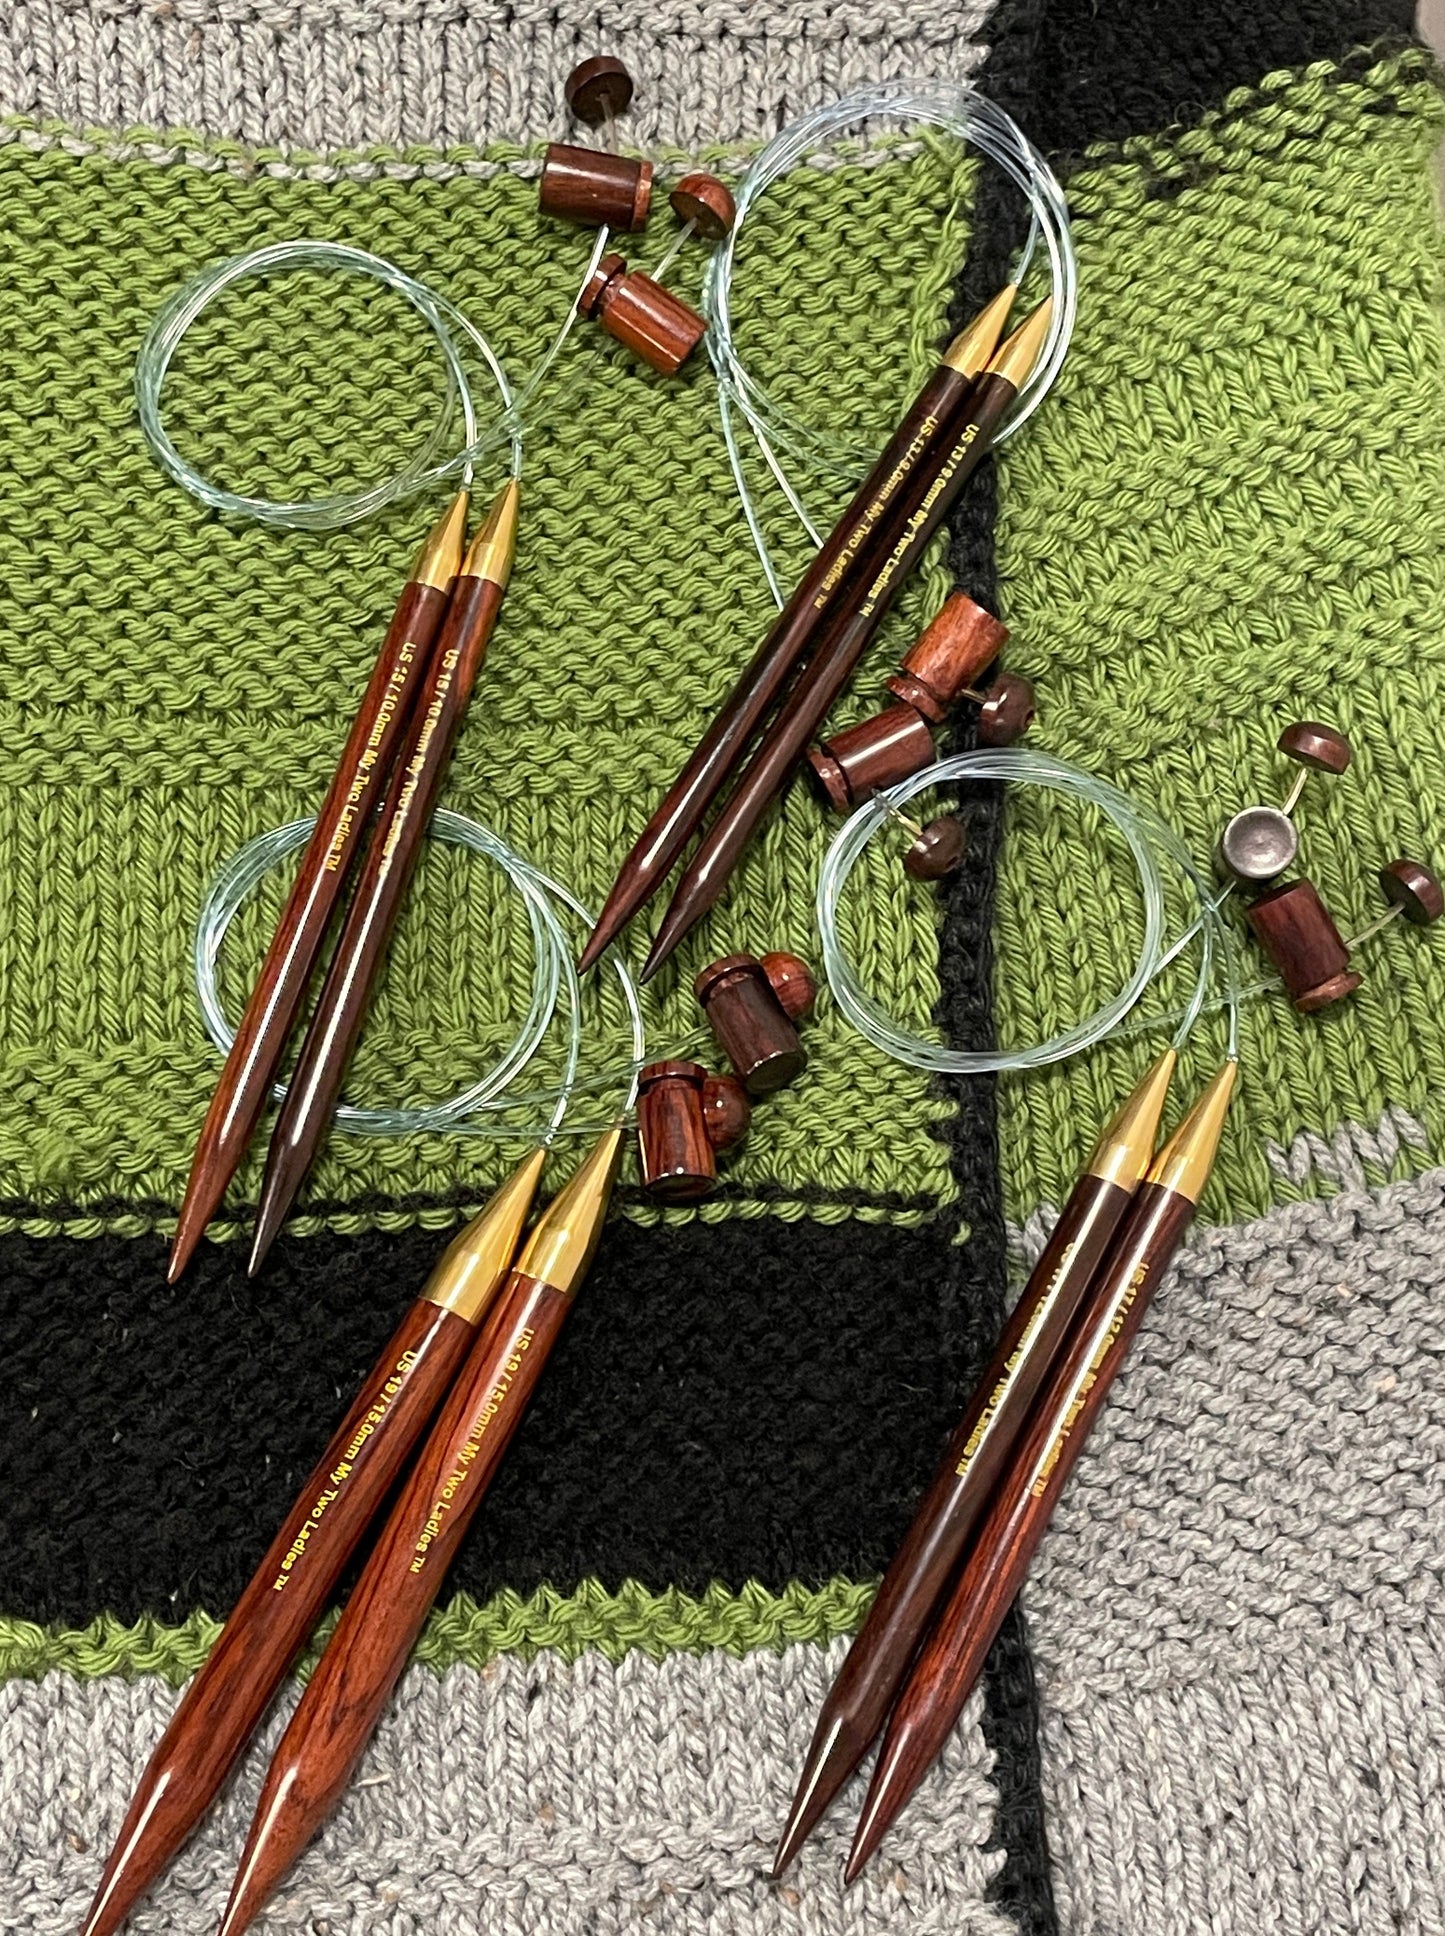 BIG BLANKET BUNDLE | Adjustable Knitting Needles | 4 SIZES | US13, US15, US17, US19 | w/case